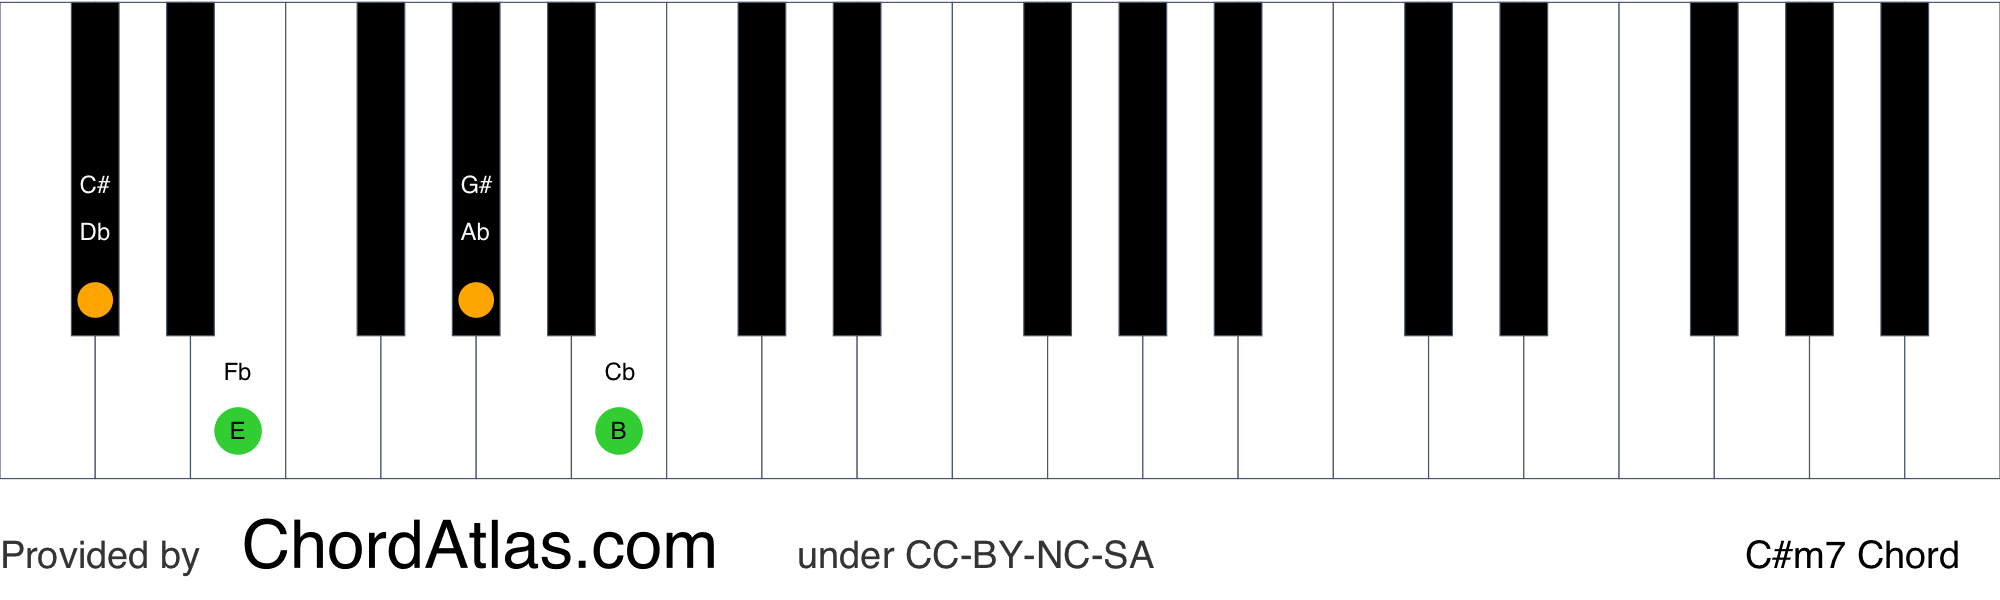 c sharp minor 7 piano chord dictionary